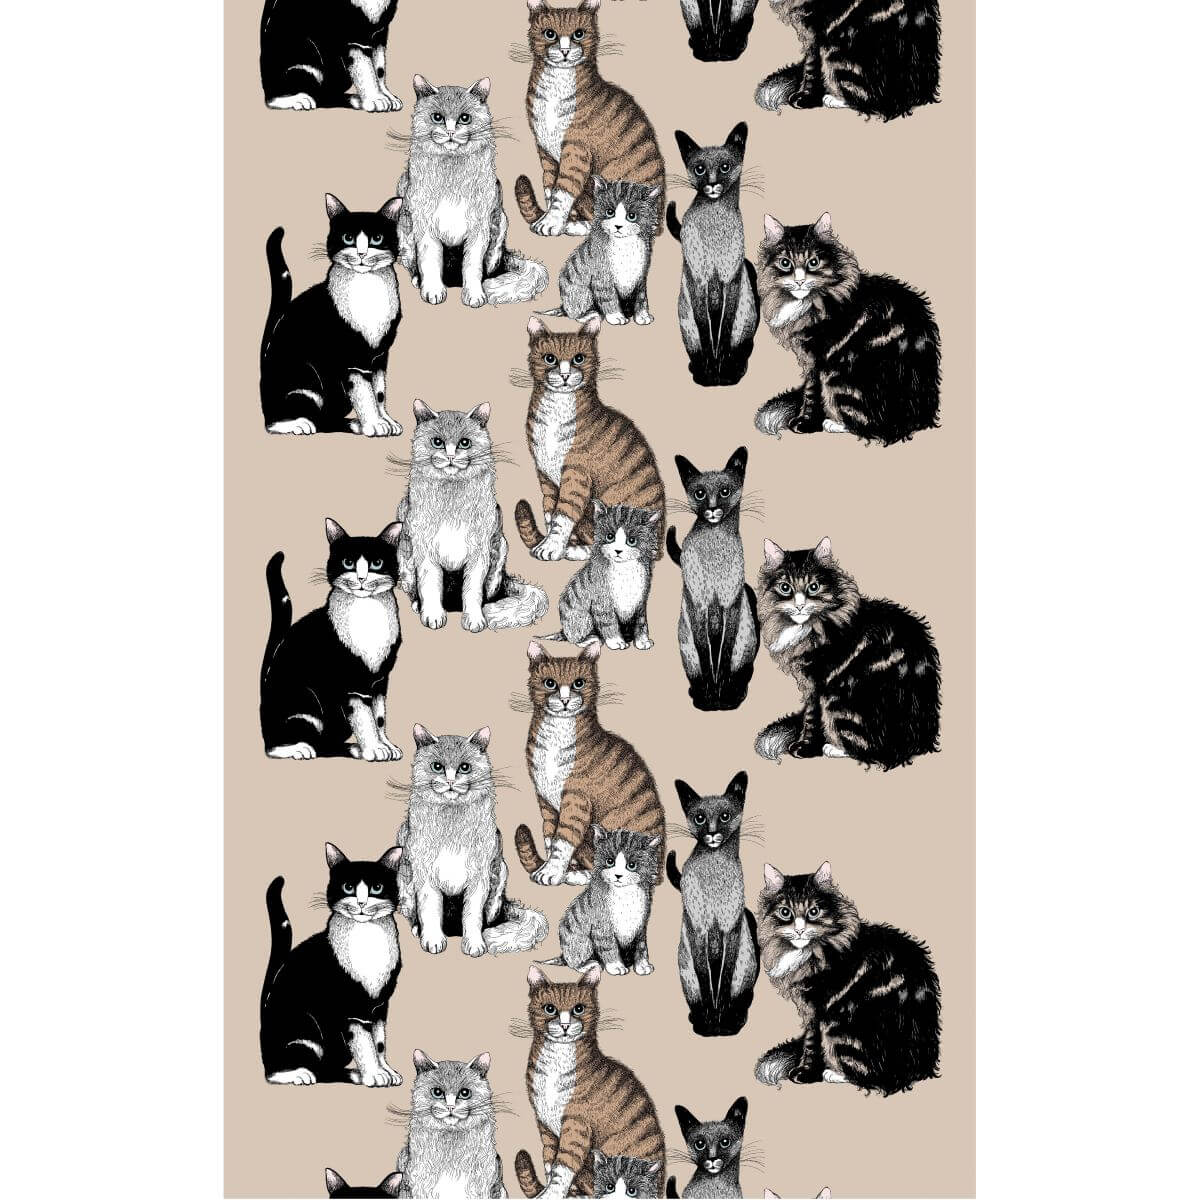 Wzór zasłony w koty KITTIES z malowanymi siedzącymi małymi i dużymi kotkami. Wzór zasłony w brązowe i czarne koty na beżowym tle